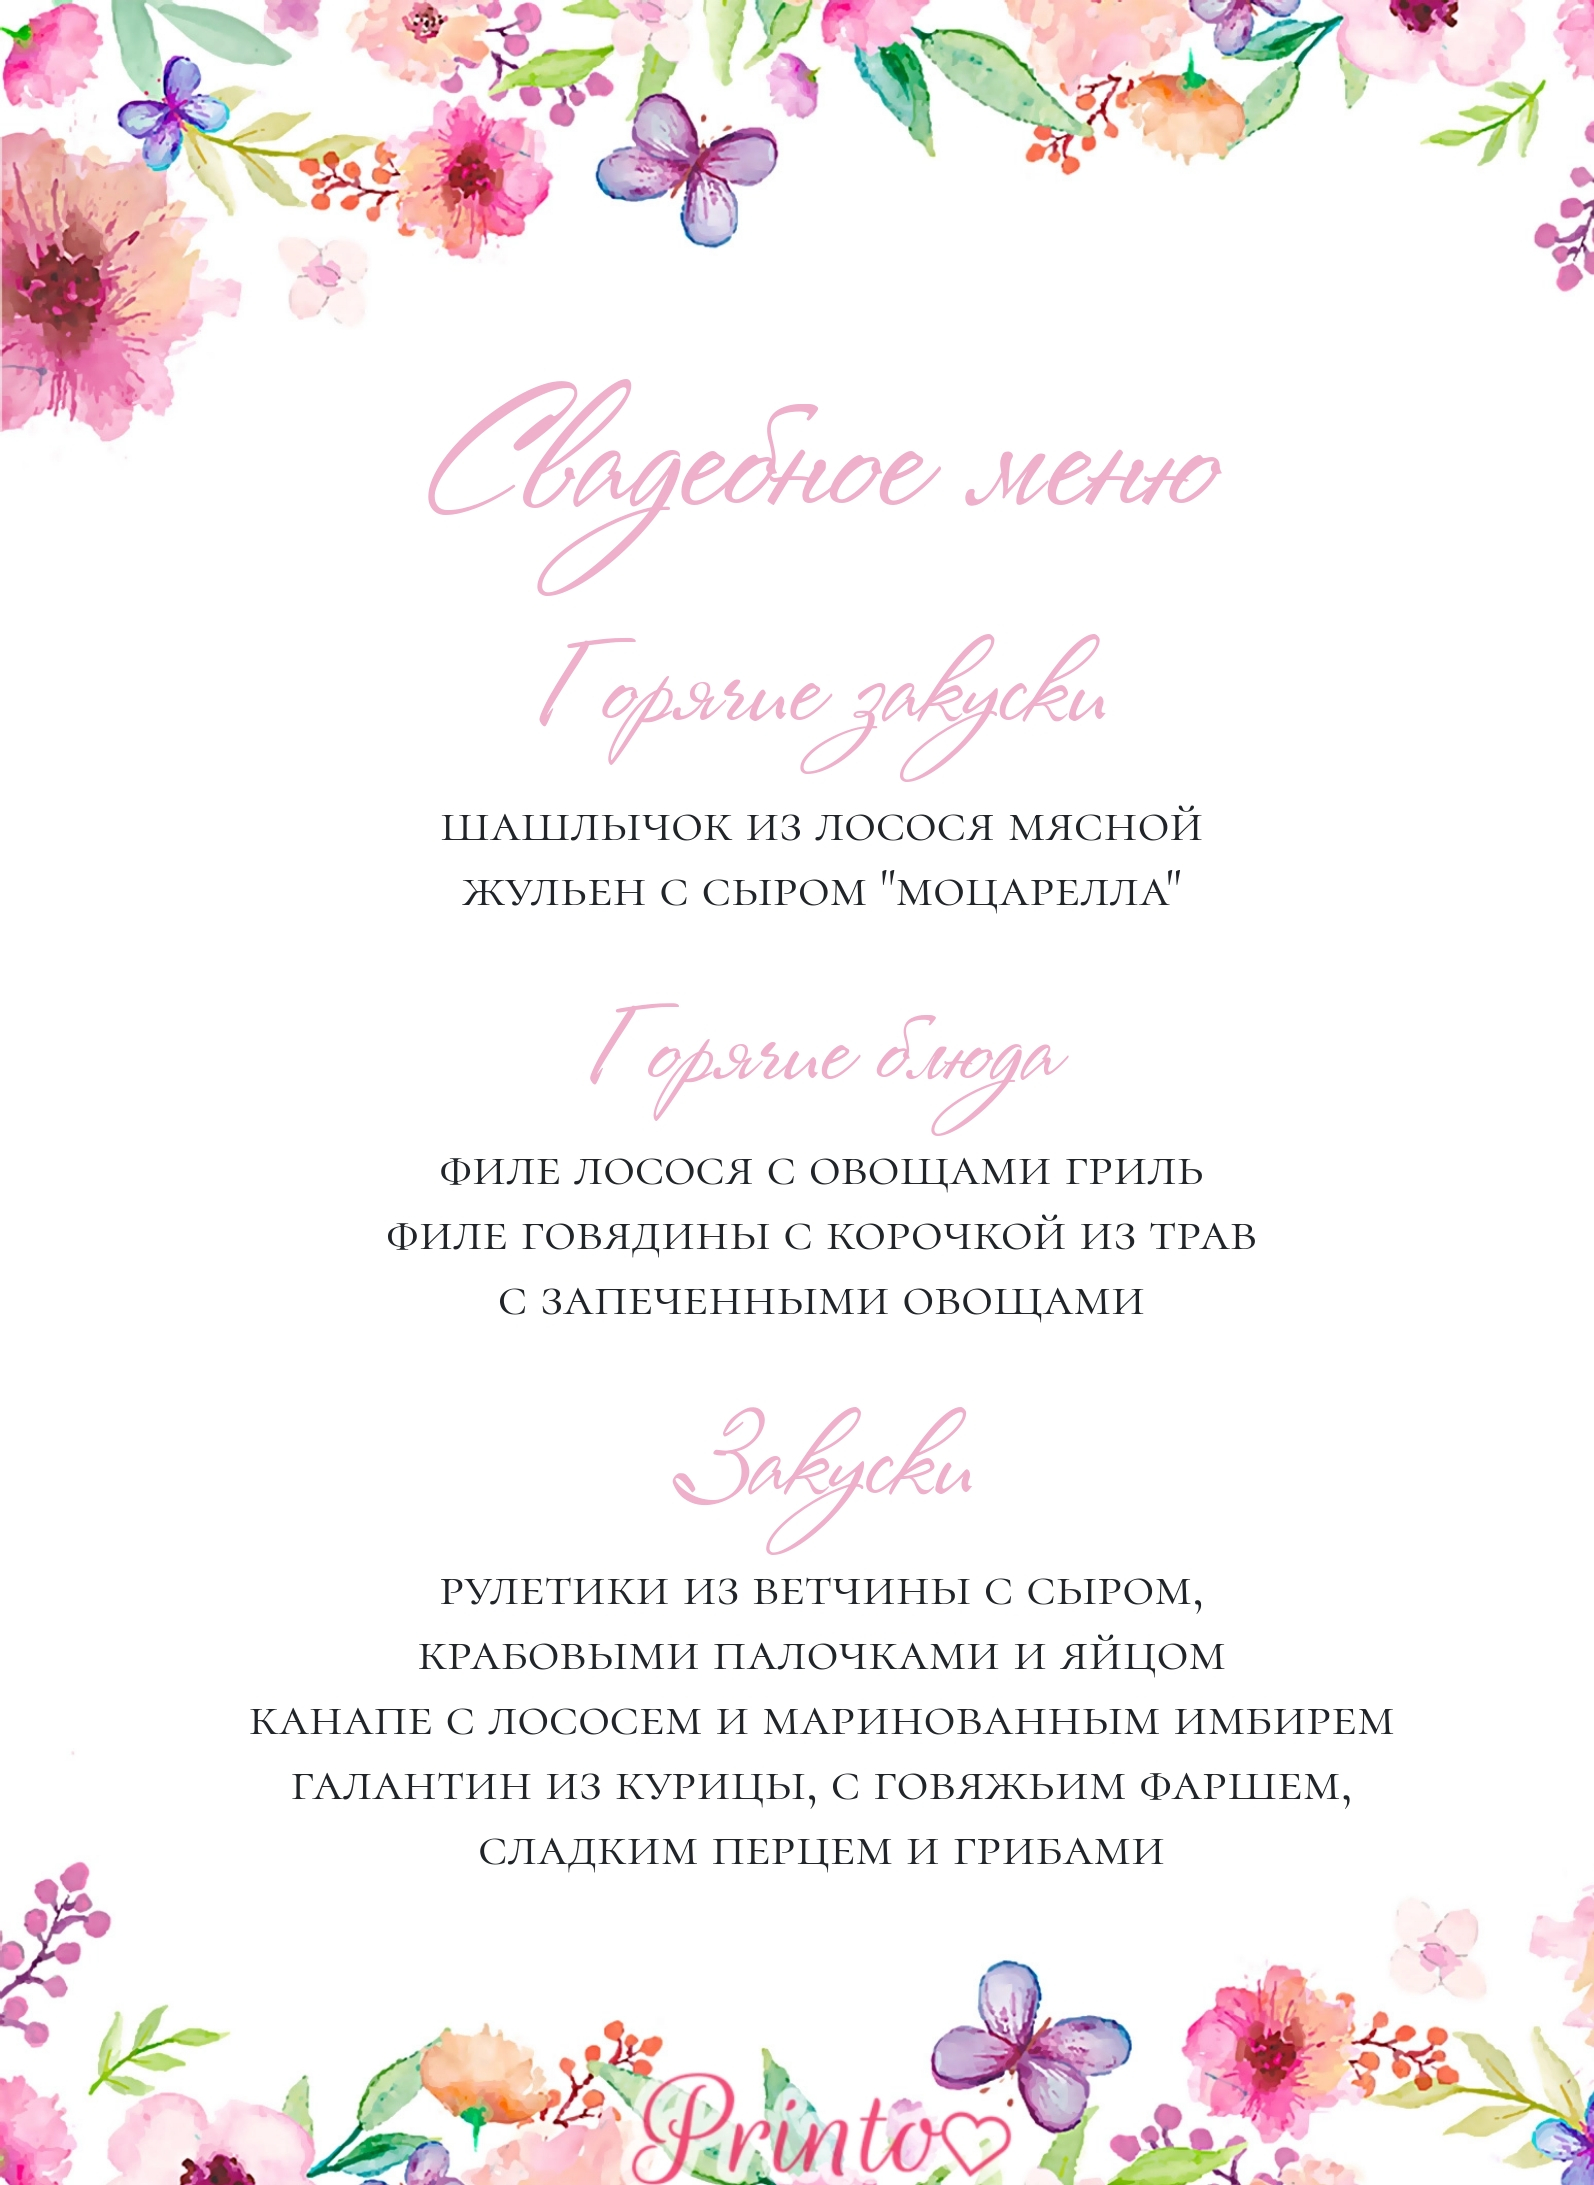 Шаблон свадебного меню "Летний сад"